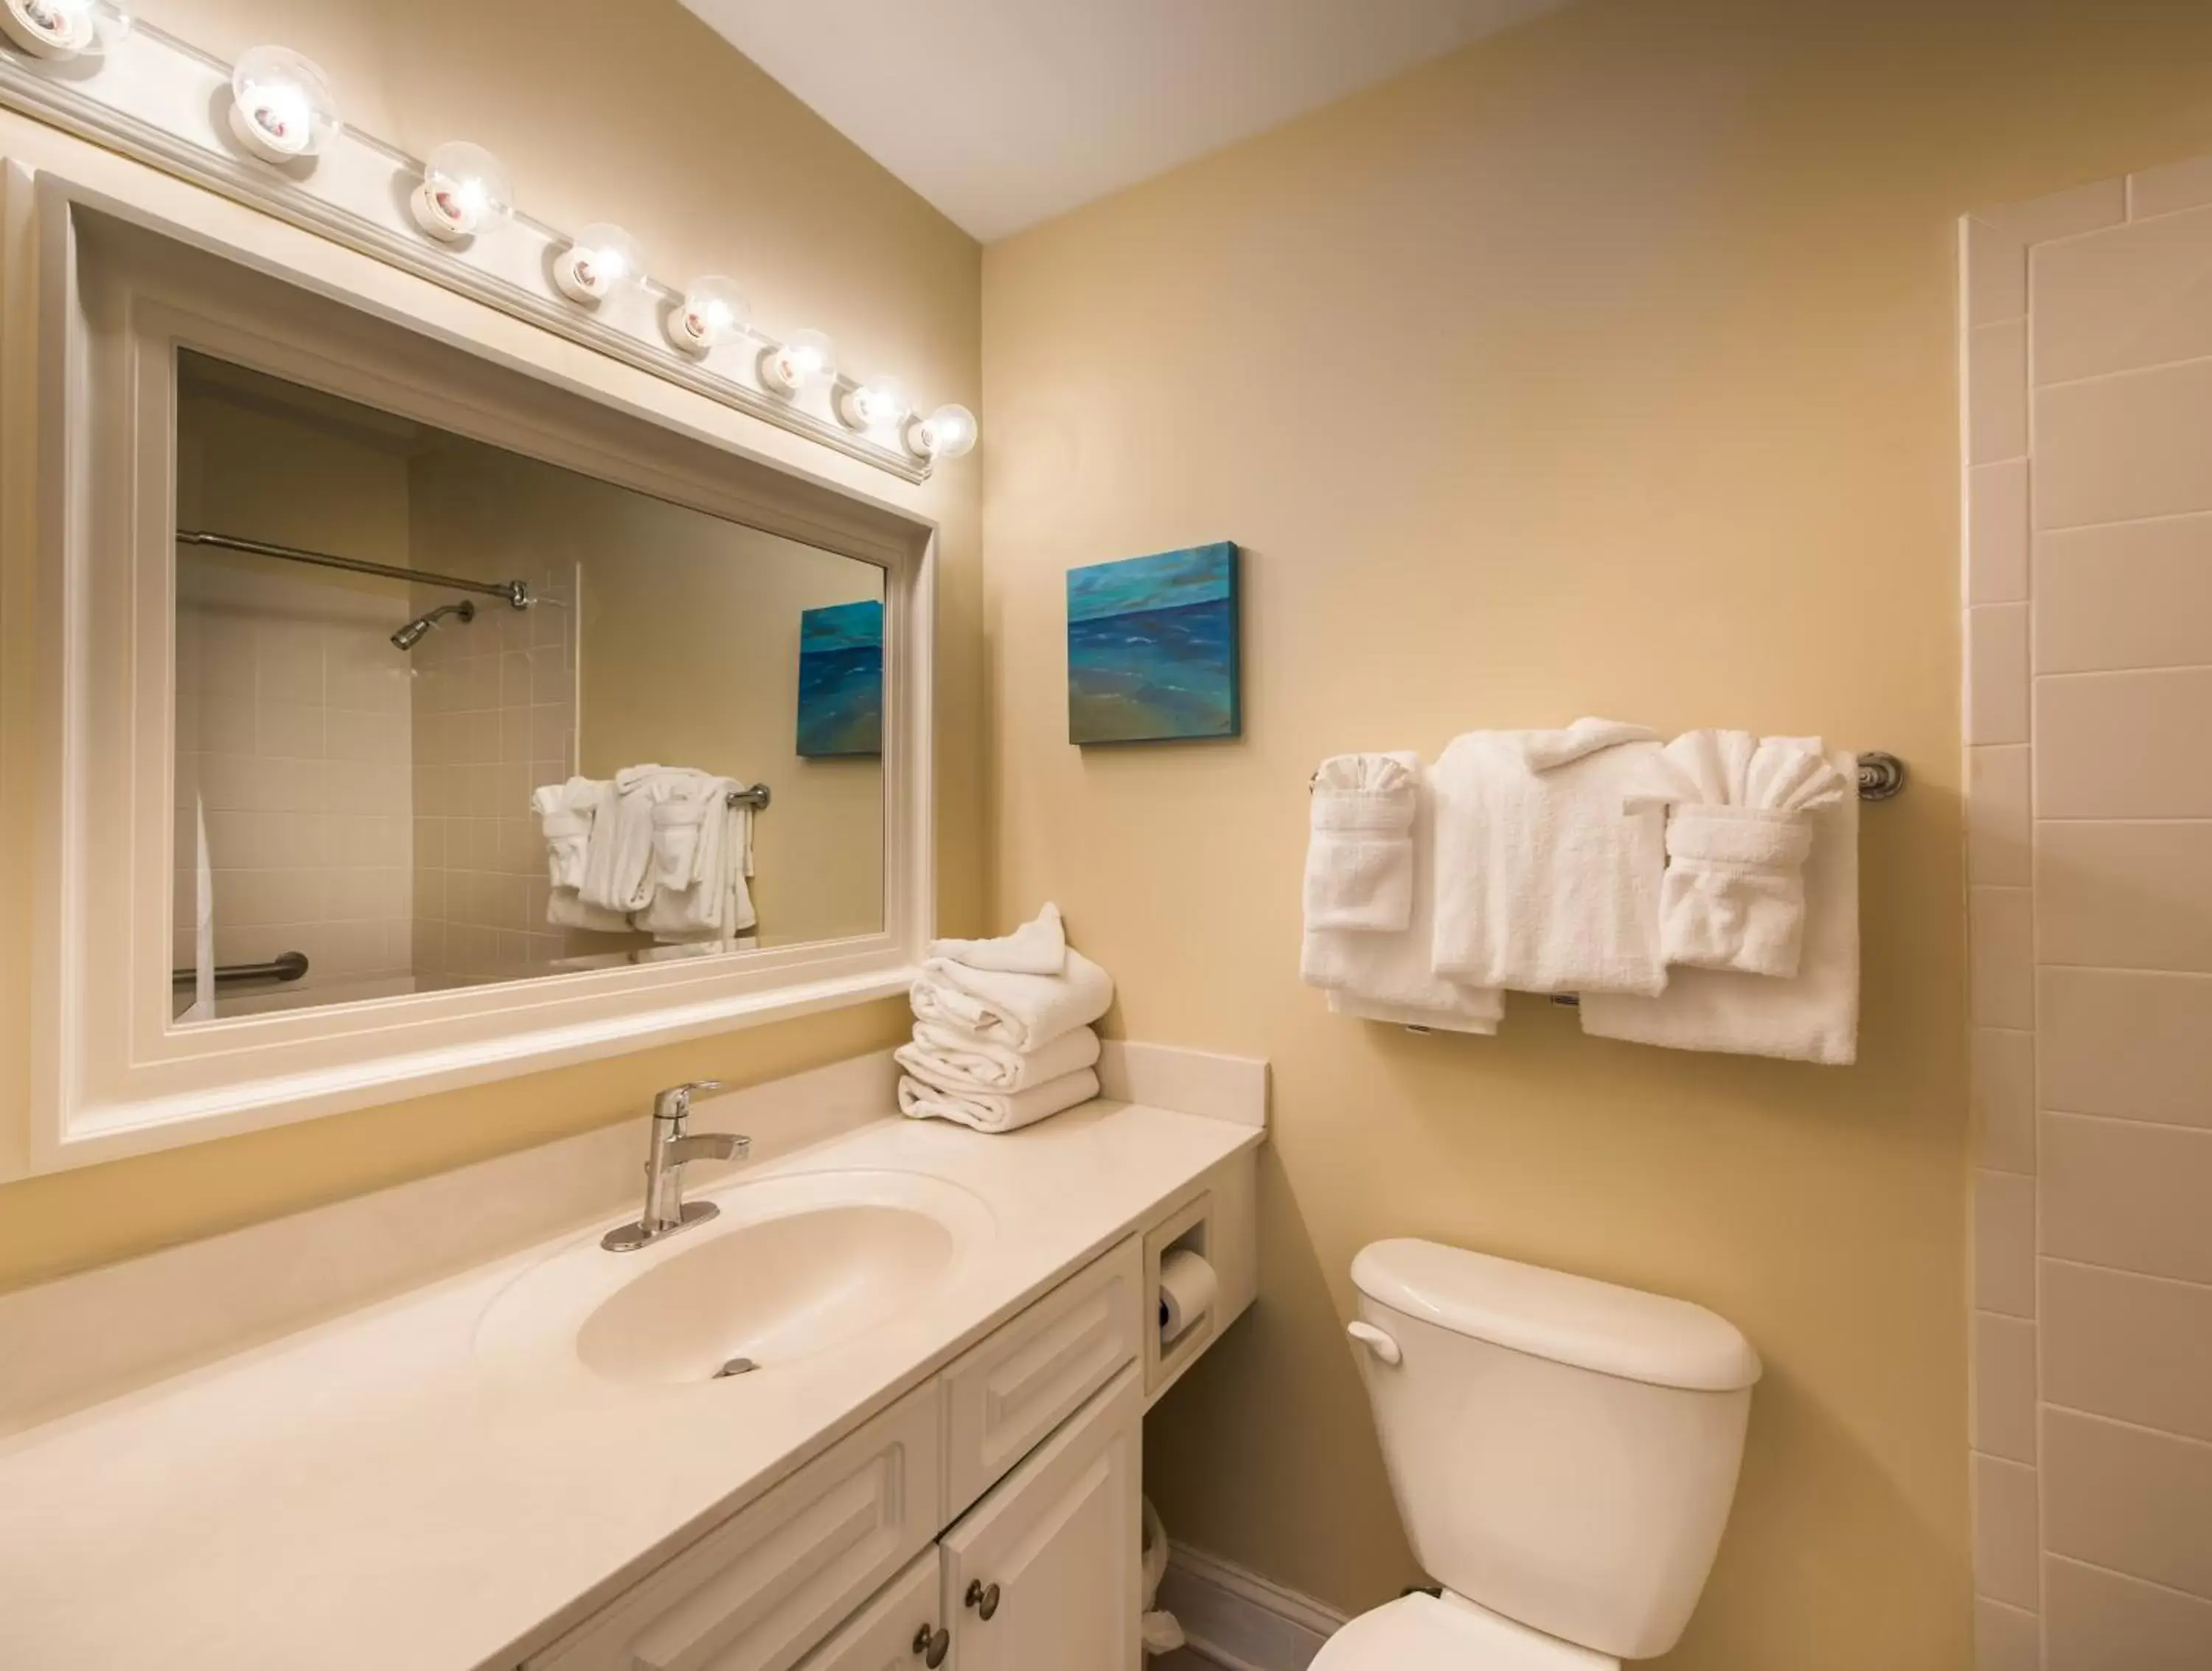 Bathroom in Villas by the Sea Resort & Conference Center